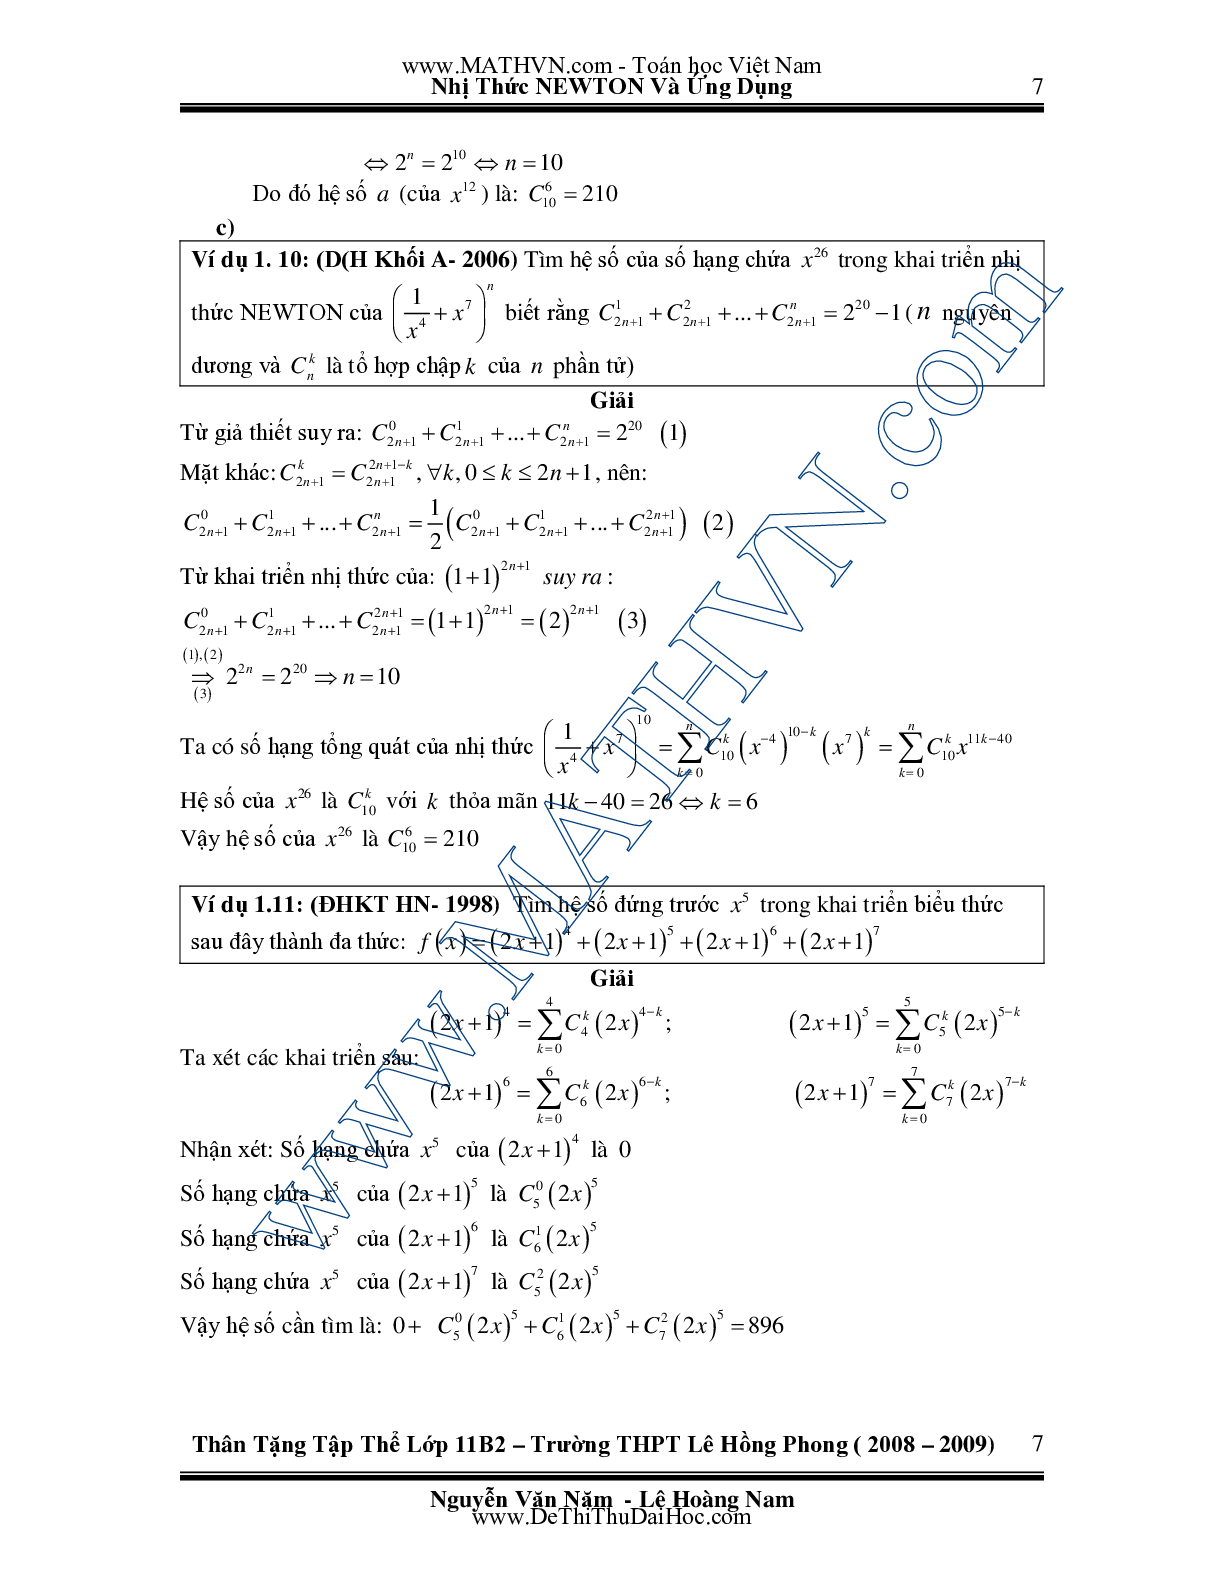 Chuyên đề Nhị thức Newton và ứng dụng môn Toán lớp 11 (trang 7)